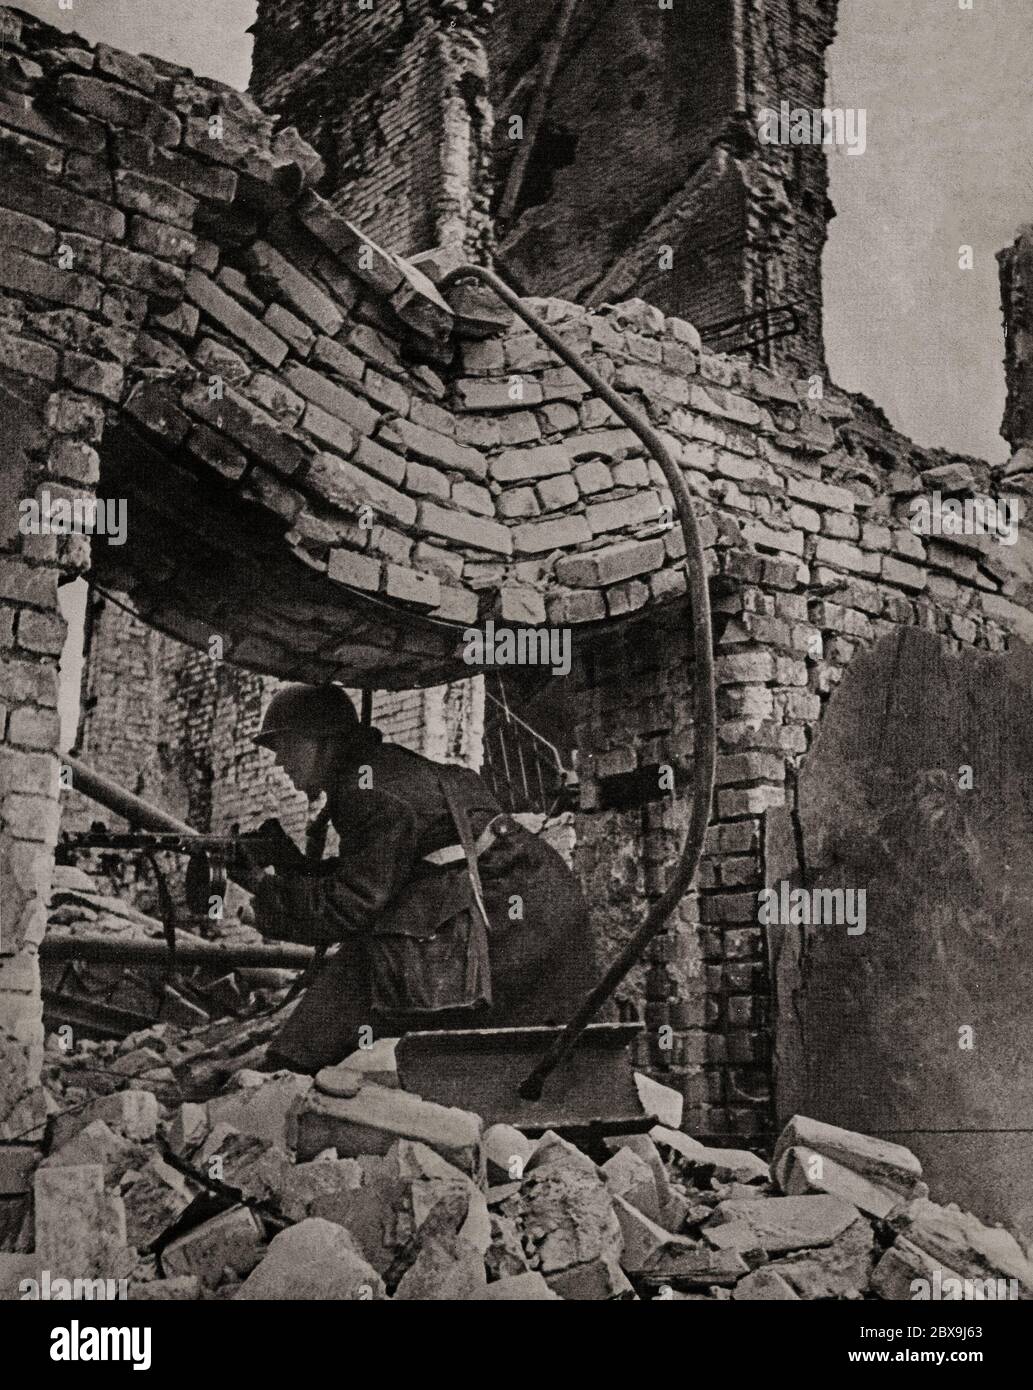 Un soldato tedesco in casa per i combattimenti durante la battaglia di Stalingrado (1942-1943), quando la Germania e i suoi alleati combattevano l'Unione Sovietica per il controllo della città di Stalingrado (ora Volgograd) nella Russia meridionale. È stato caratterizzato da combattimenti ravvicinati e attacchi diretti contro i civili in incursioni aeree durante una delle battaglie più sanguinose della storia della guerra, con un totale stimato di 2 milioni di vittime. Foto Stock